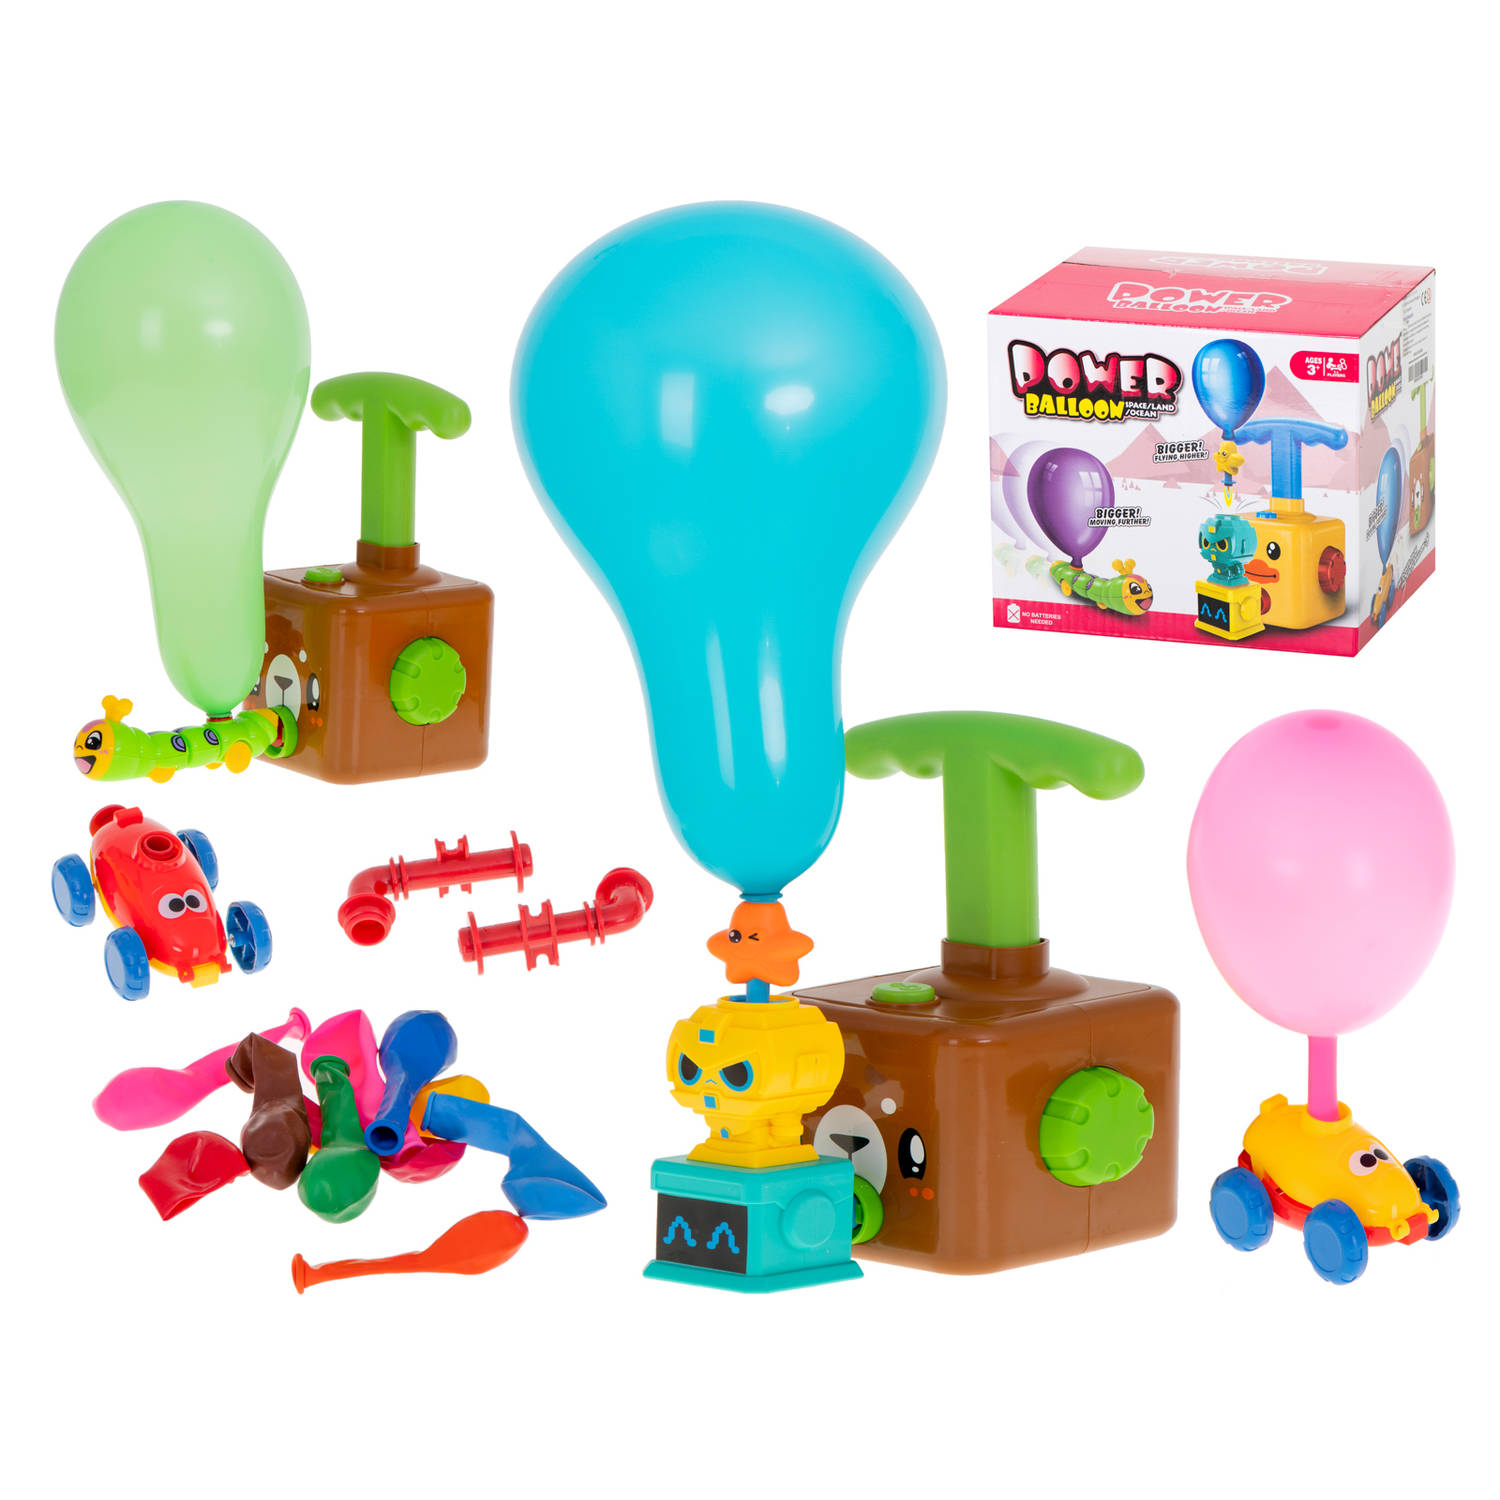 Teddybeer ballonen werper speelgoed voertuig incl. Ballonnen en accessoires